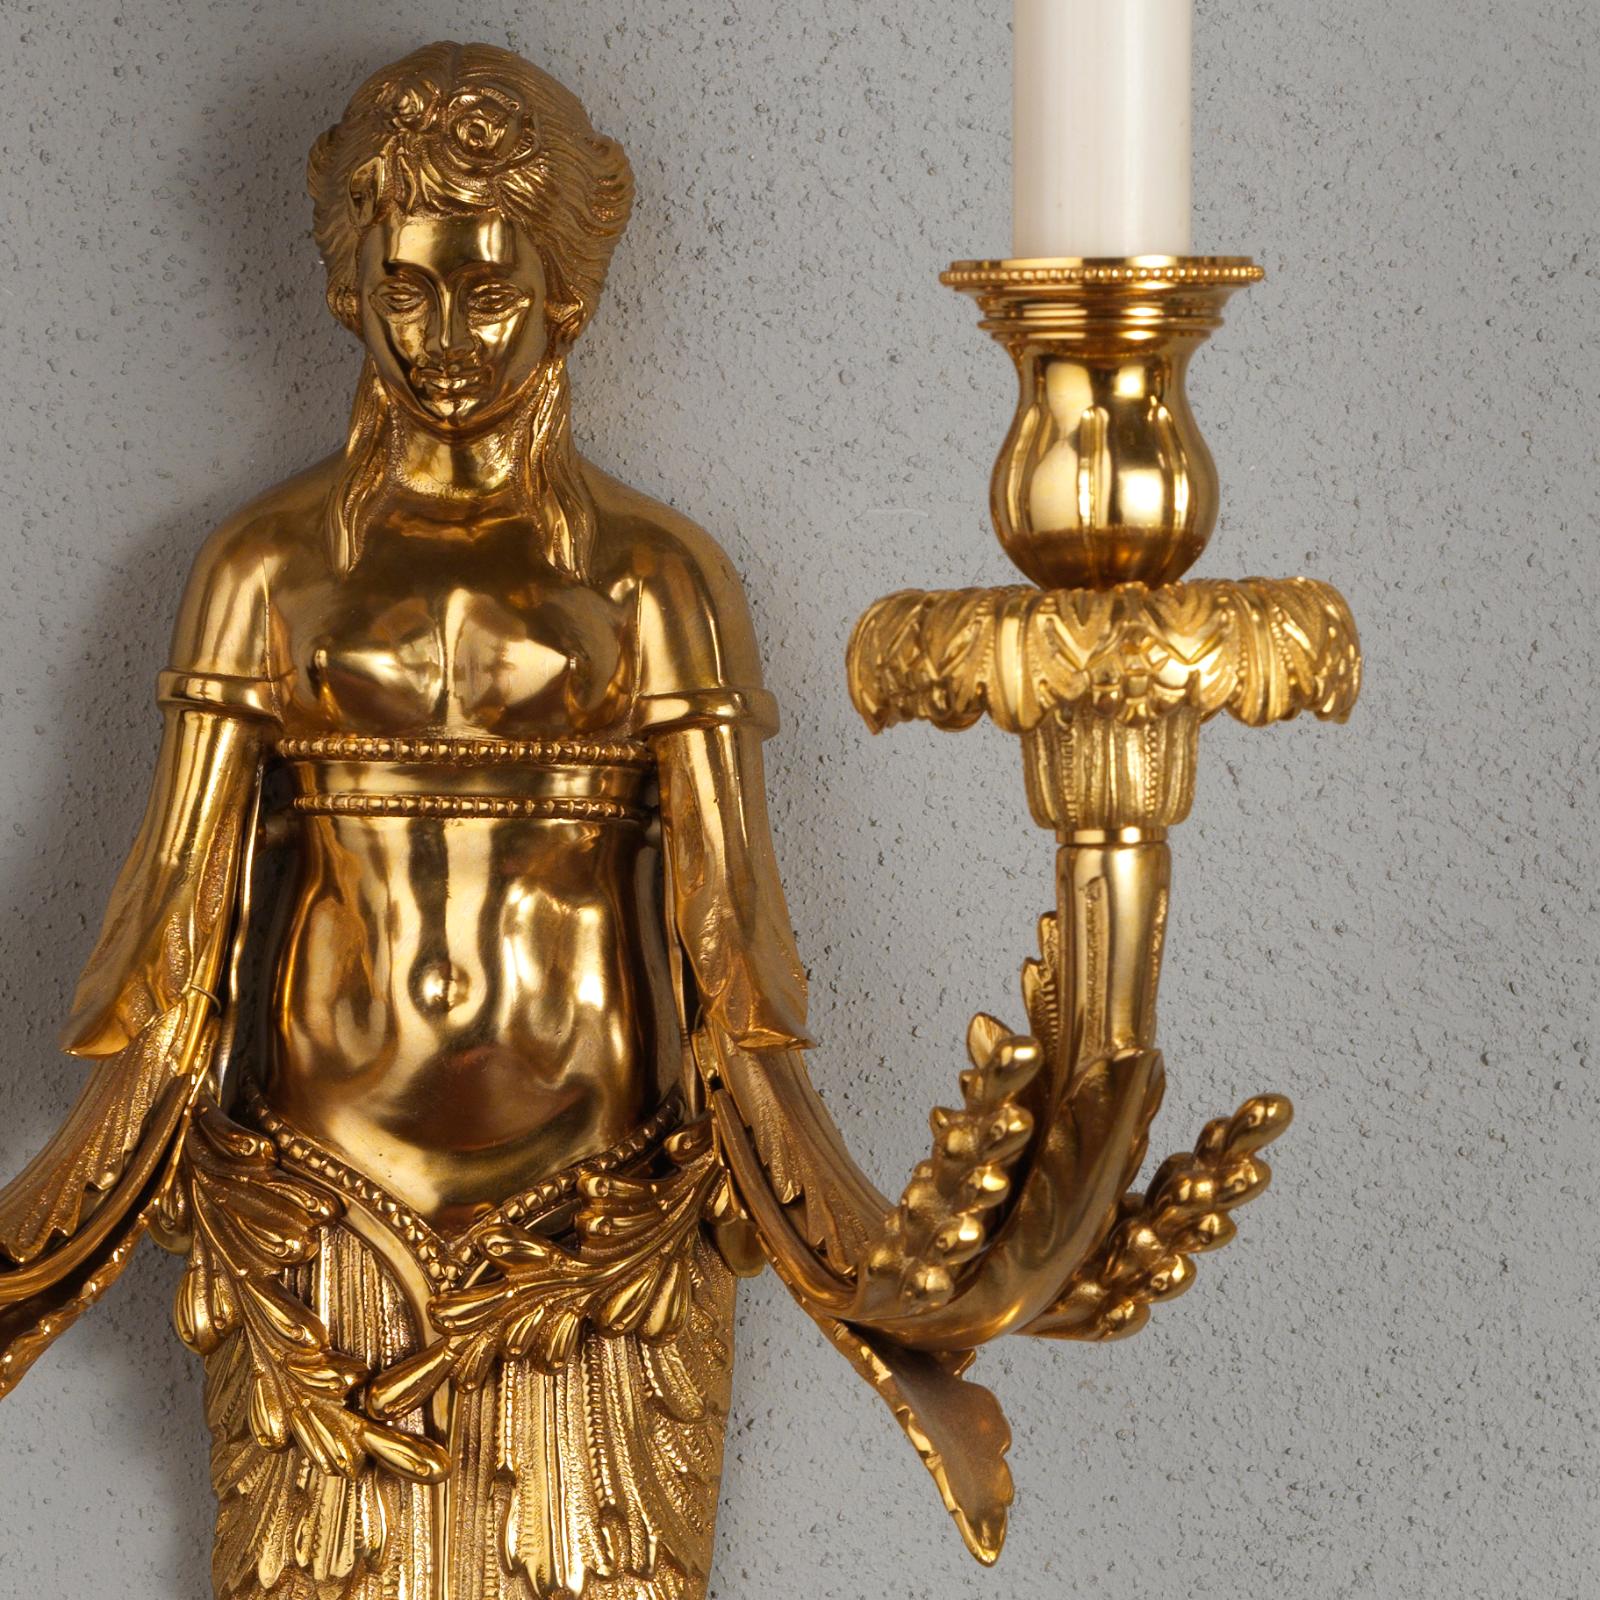 Dekorativer Satz von zwei großen figuralen Wandleuchtern aus vergoldeter Bronze von Gherardo Degli Albizzi. Die weibliche Figur zeichnet sich durch eine sehr reiche pflanzliche Verzierung mit Früchten und Blättern aus, sowohl im unteren Körperteil